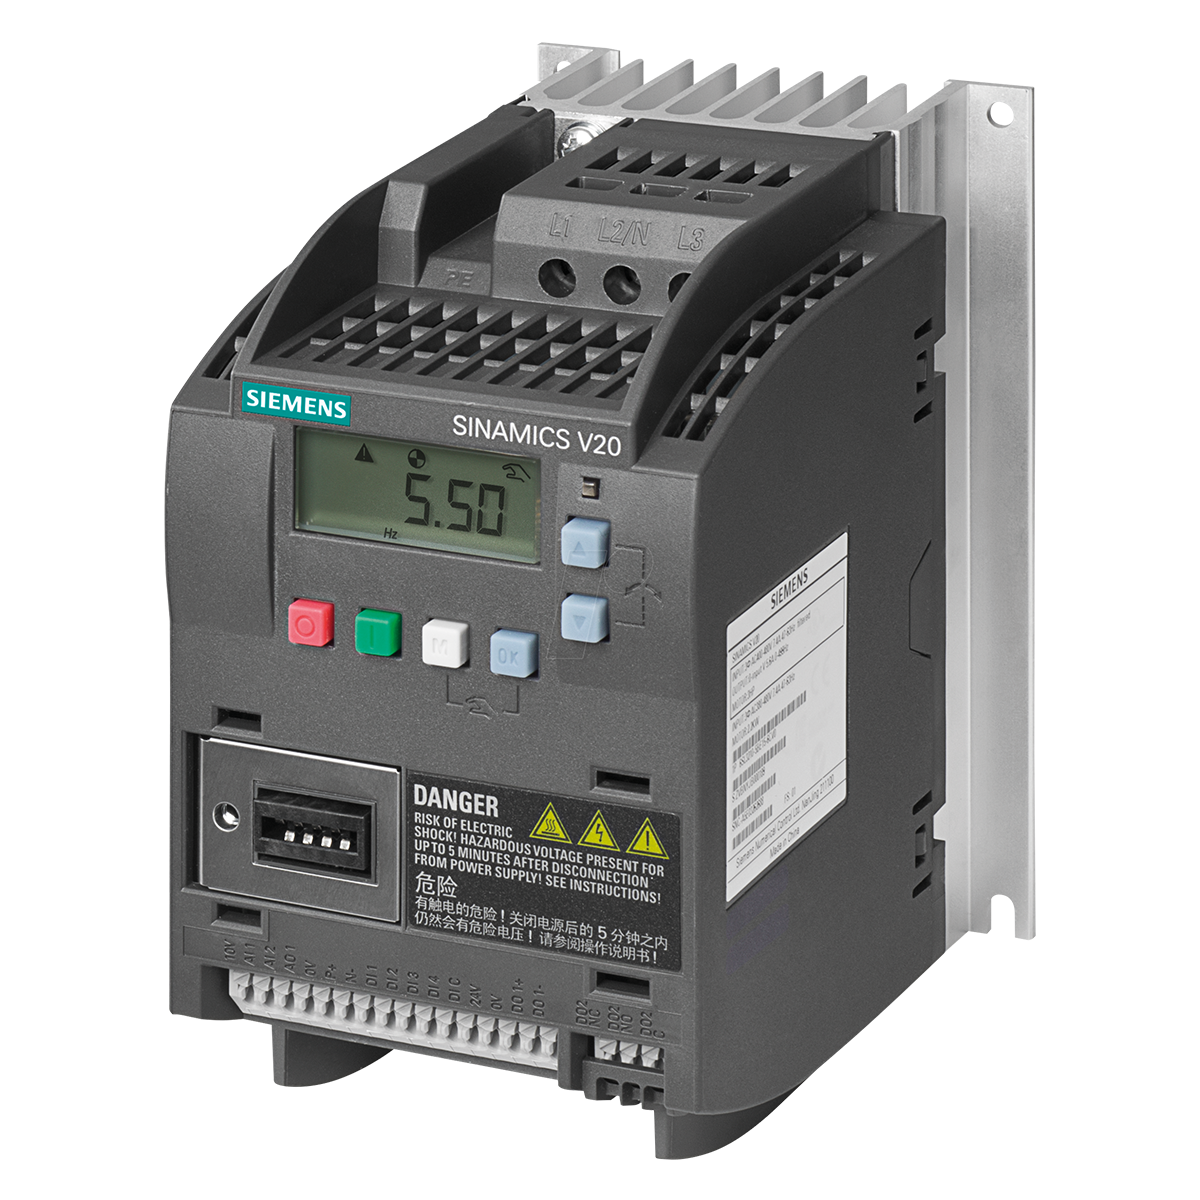 Kimo Kälte-Frequenzumrichter (FS 2.6) FP 7.5FEP-EMC/14 400V